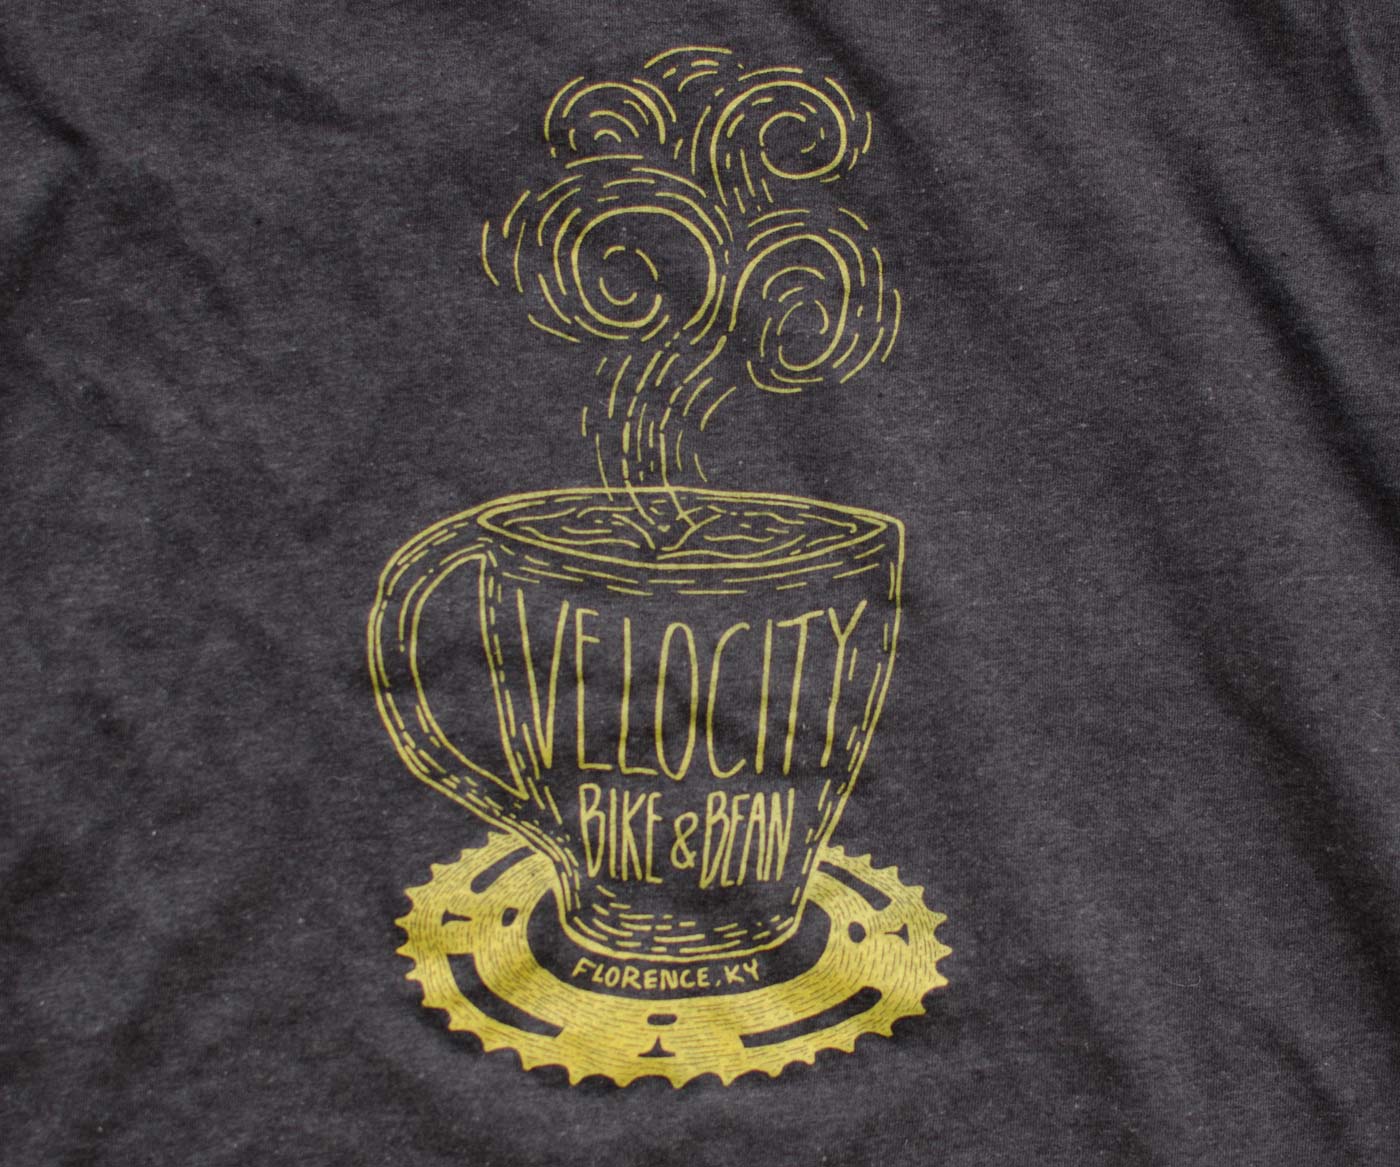 Velocity Bike and Bean Shirt Design